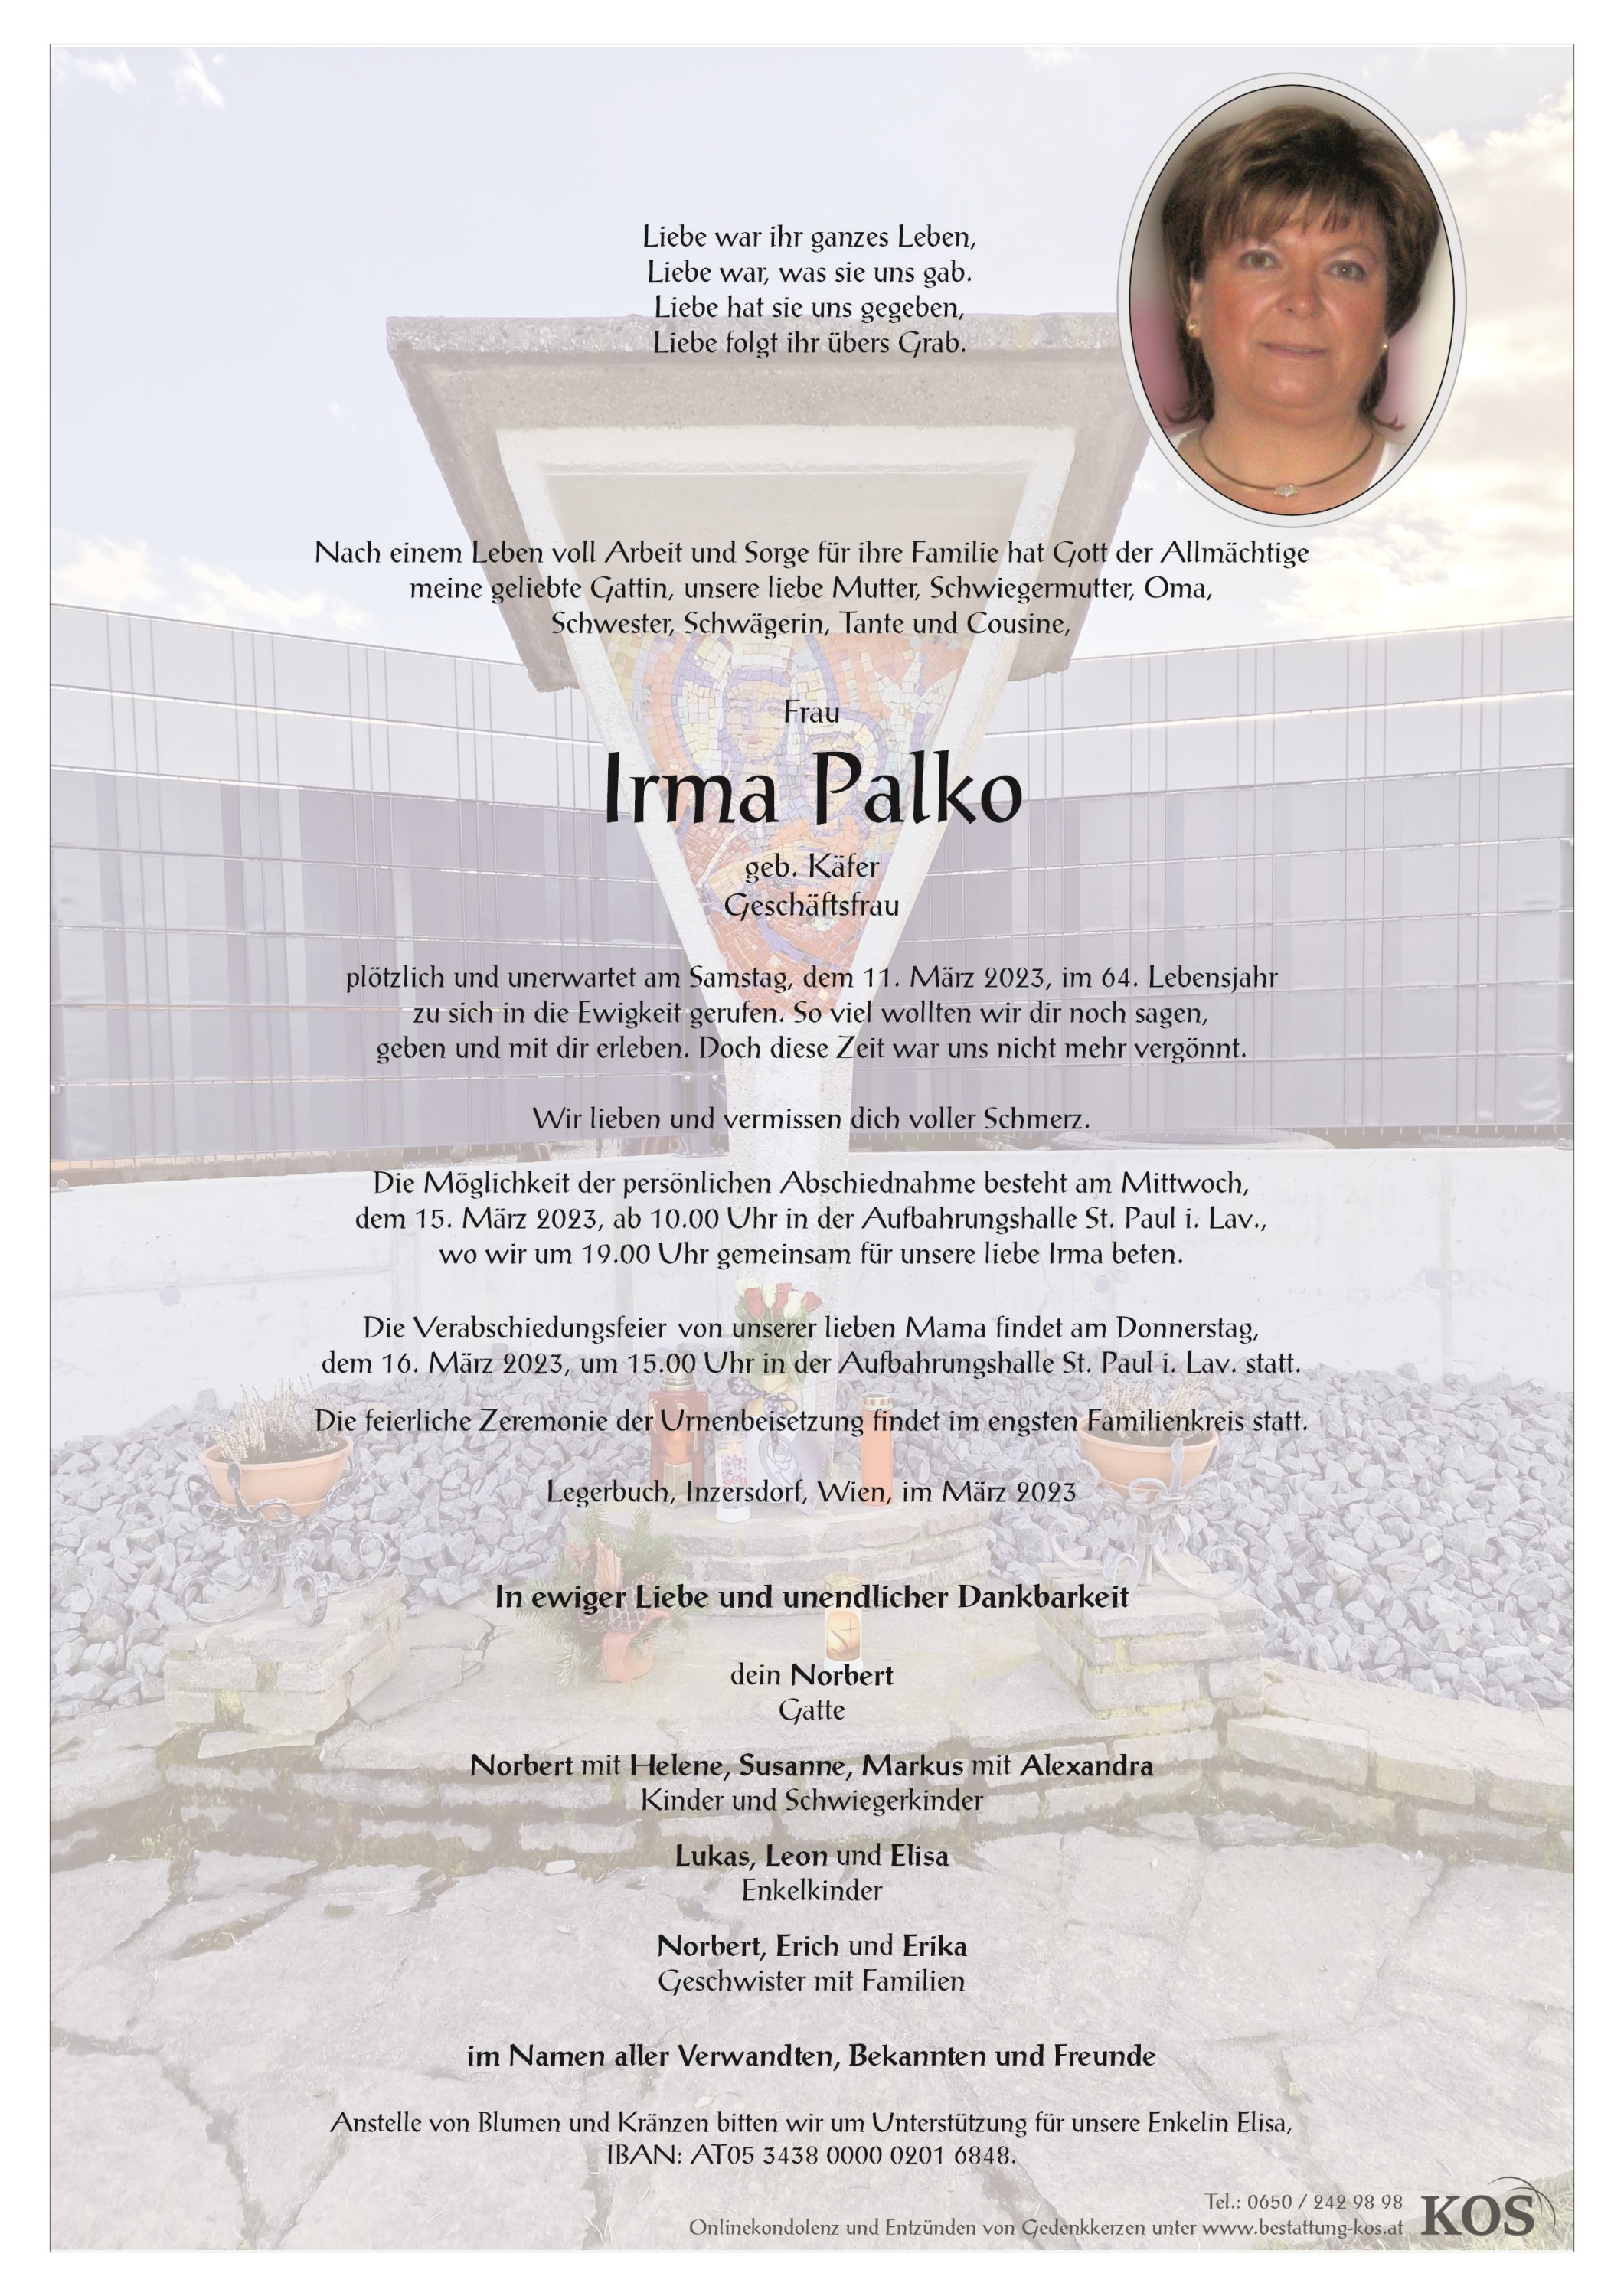 Irma Palko